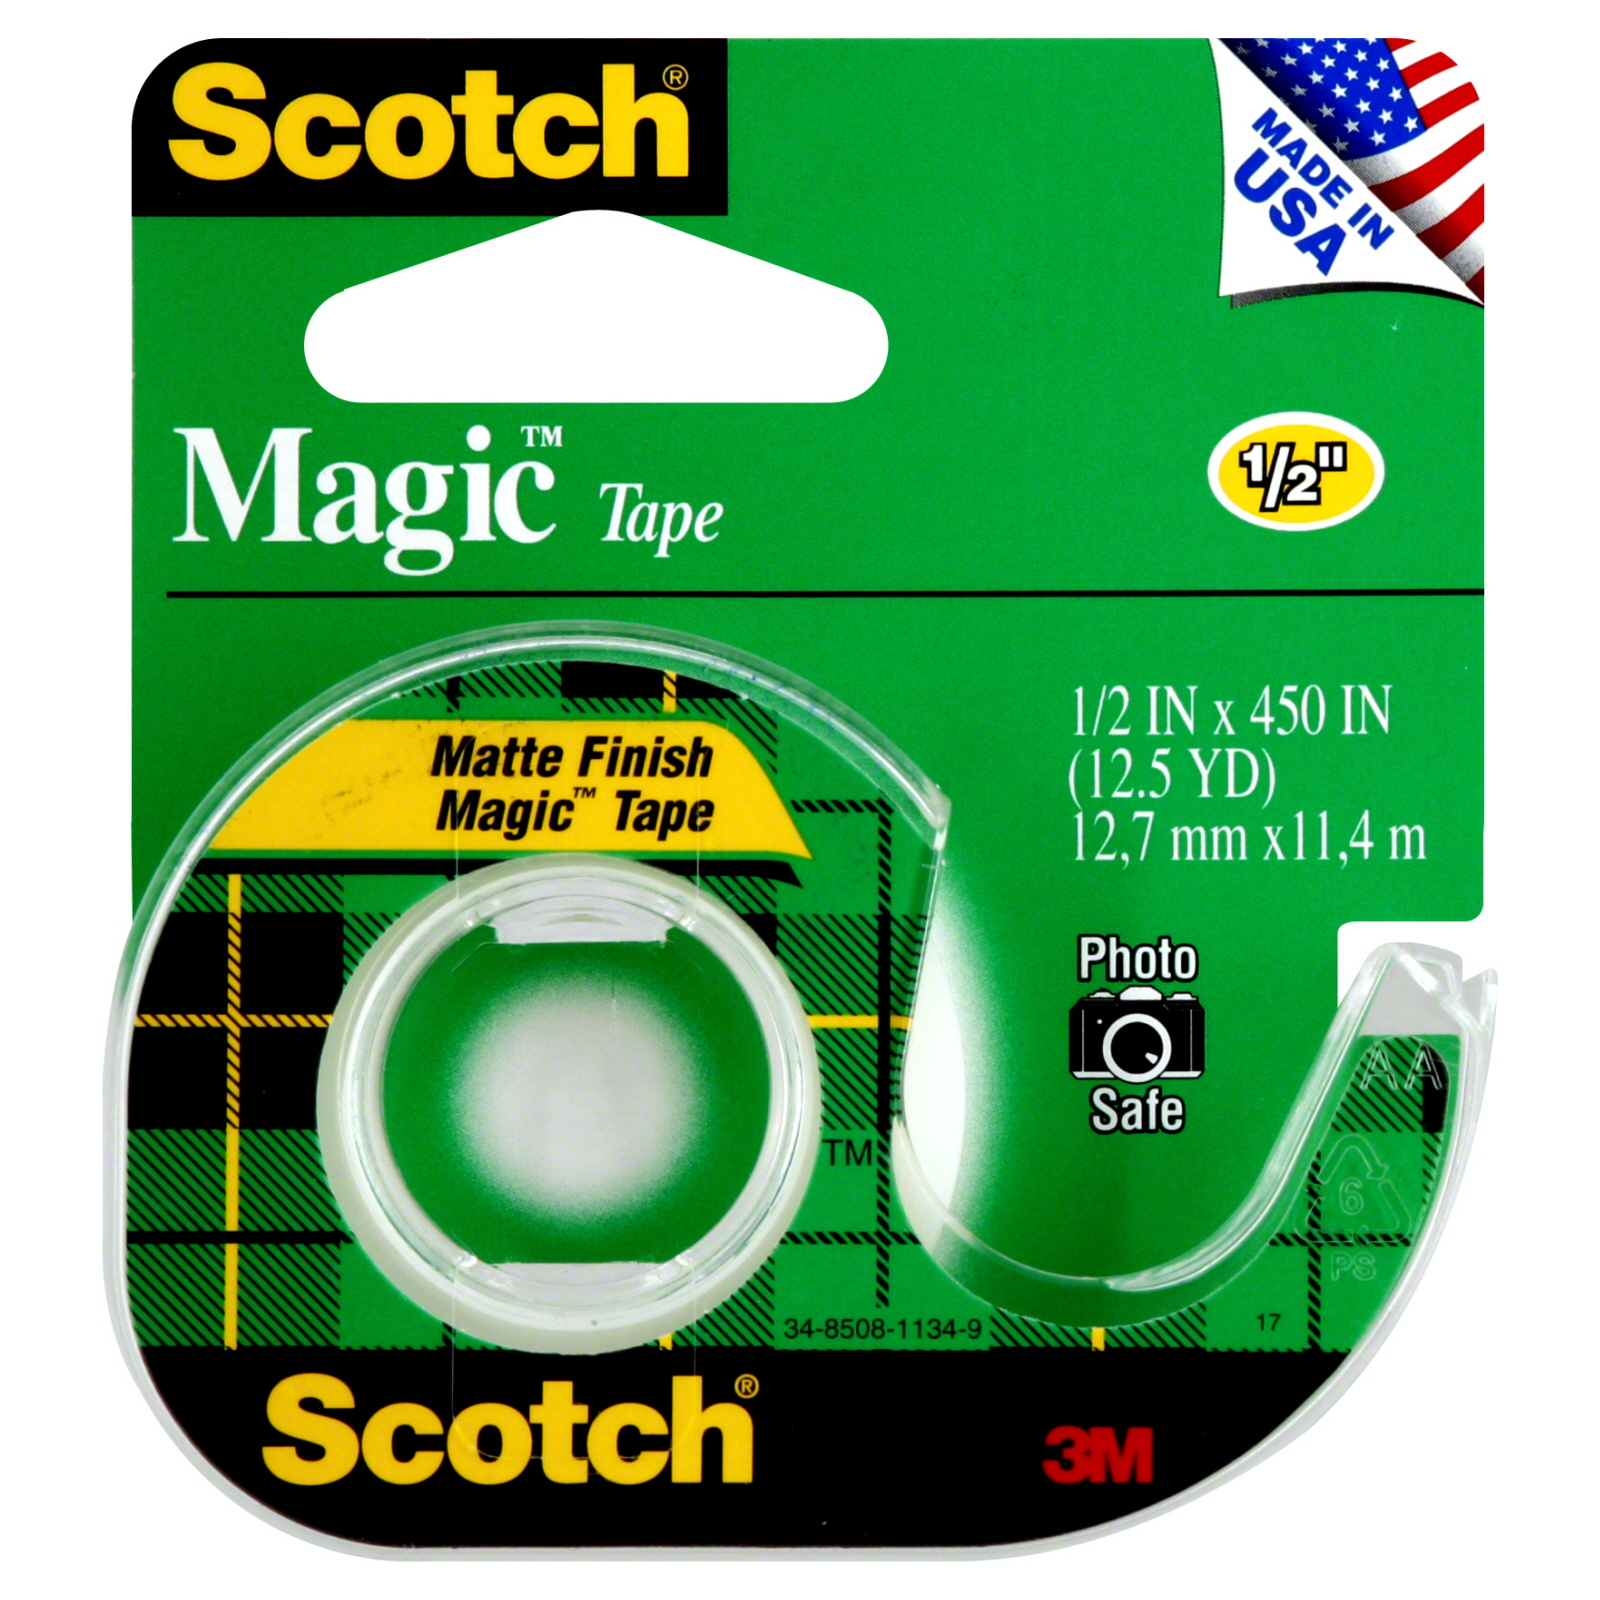 Scotch 104 Magic Tape, 1/2 Inch, 1 roll